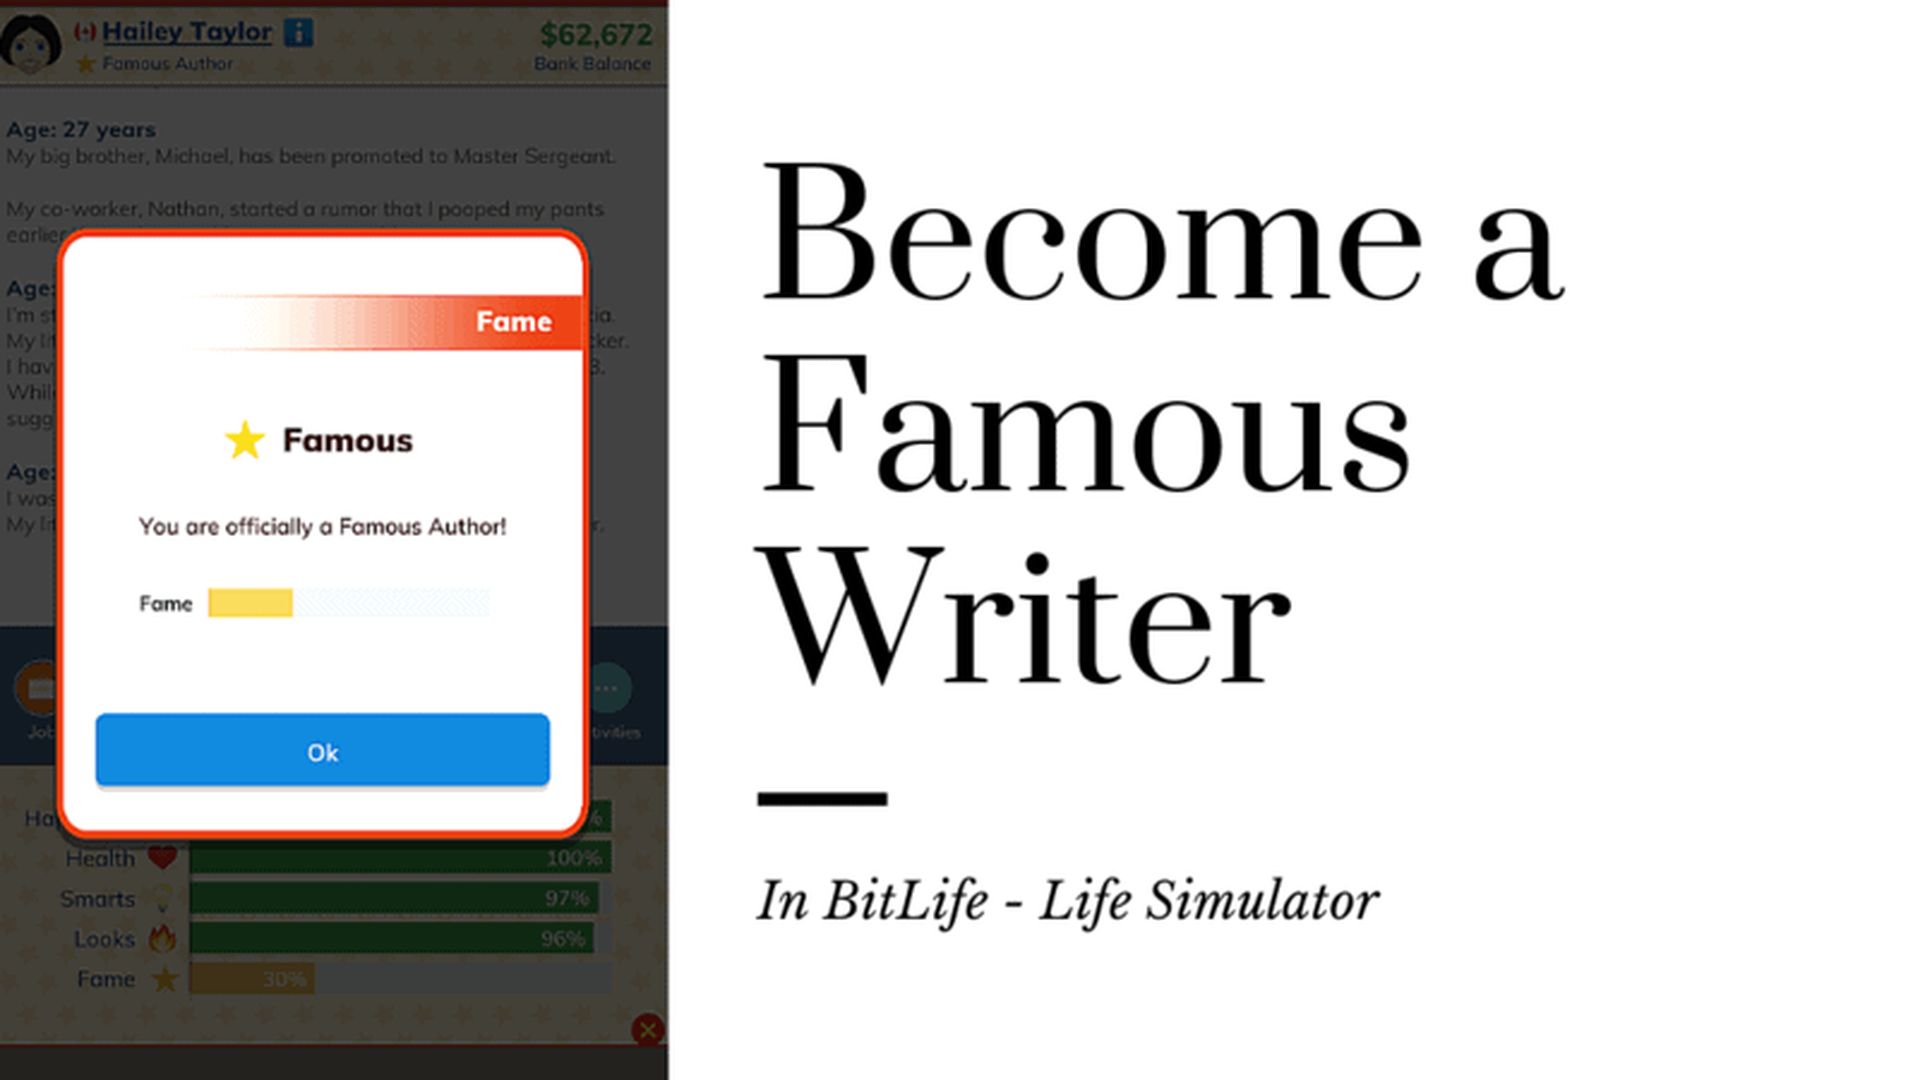 Dans cet article, nous expliquerons comment devenir un auteur célèbre dans Bitlife, afin que vous puissiez gagner le Writer Career Achievement et obtenir le célèbre ruban.